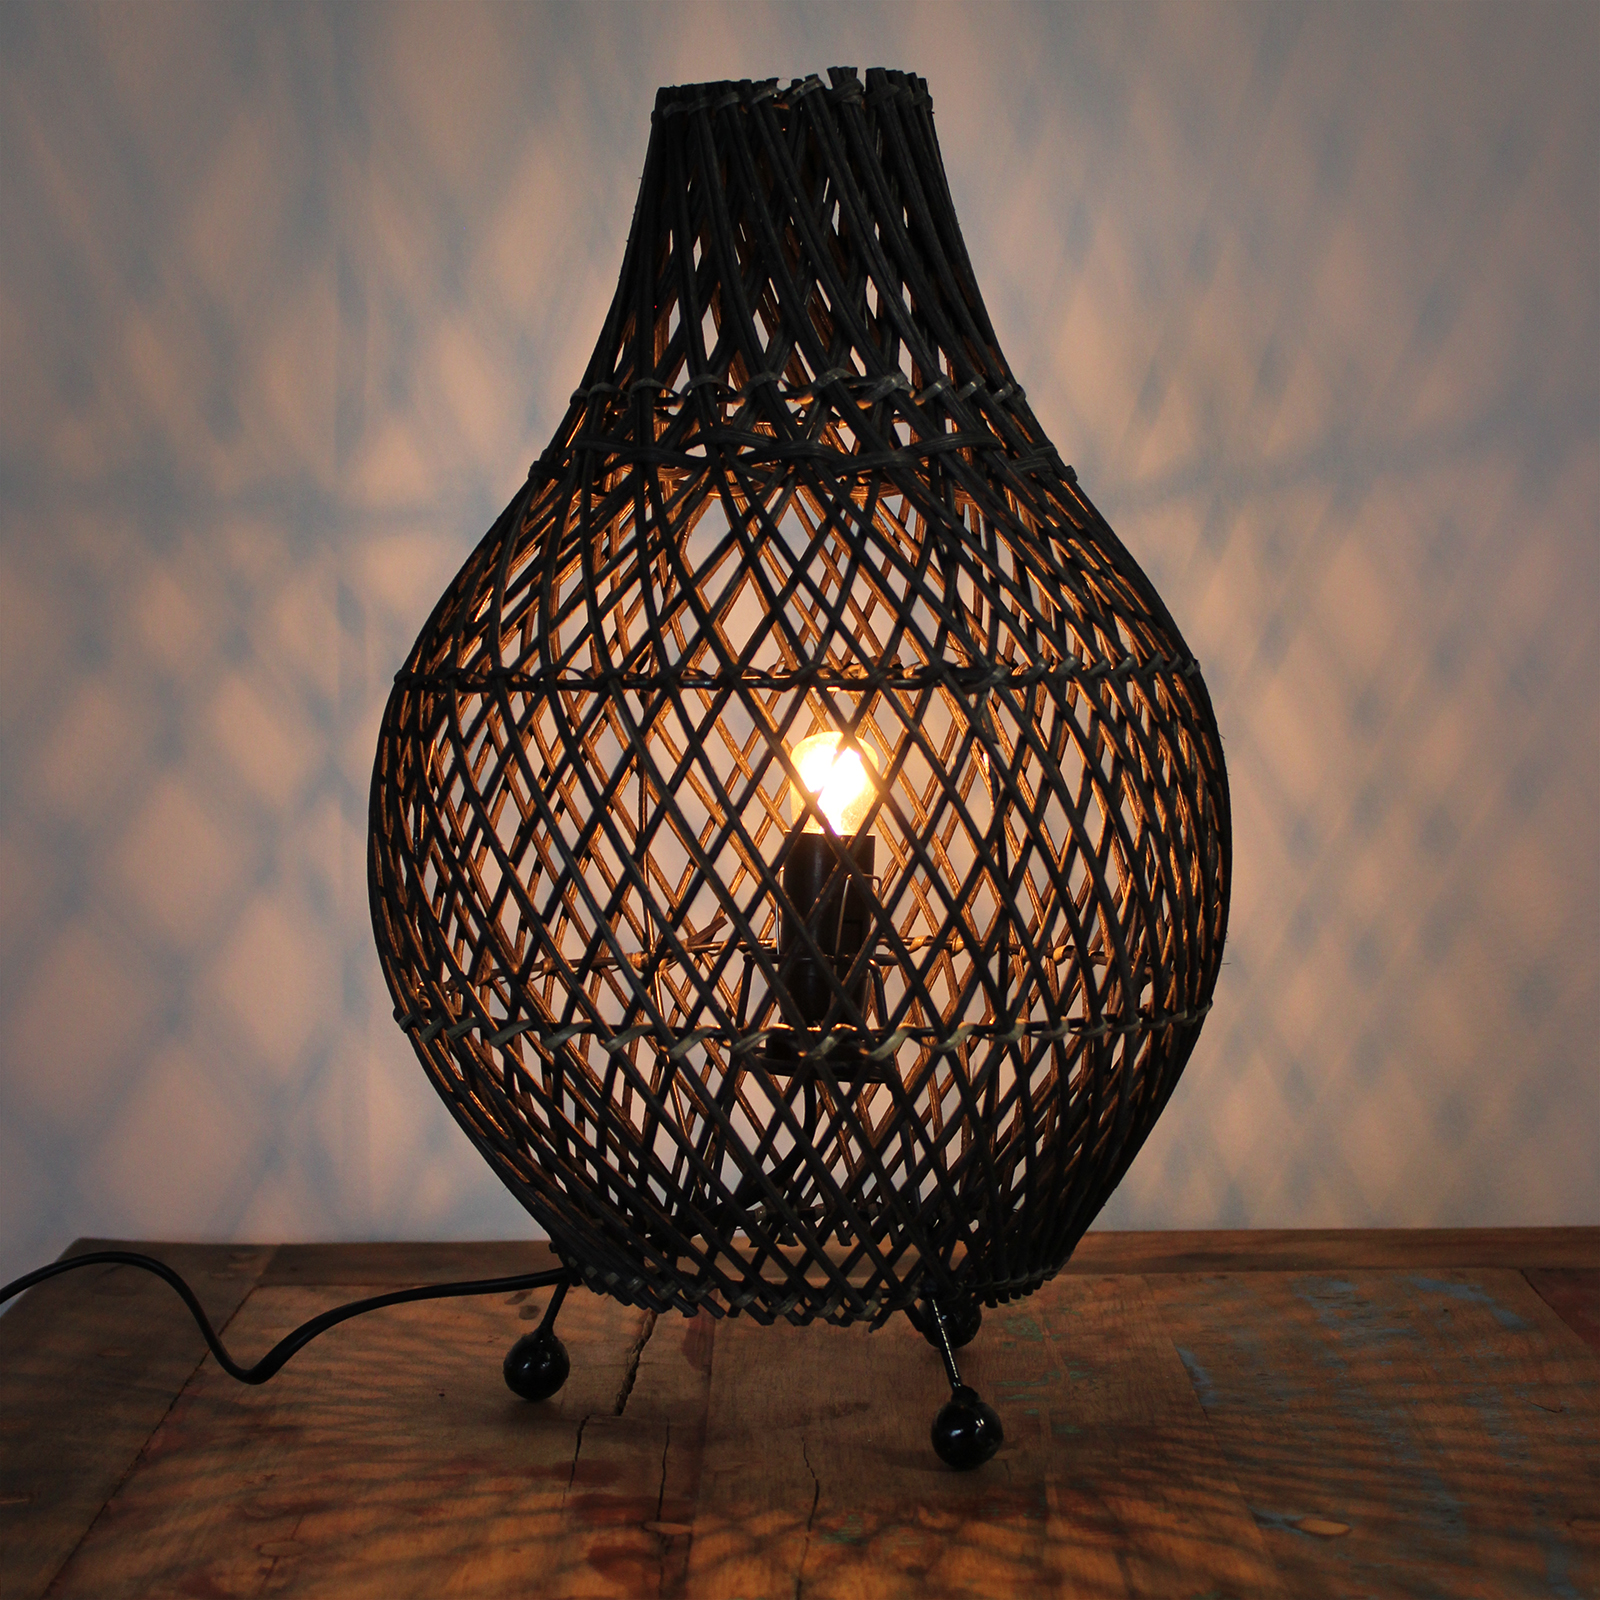 Rattan Table Lamp - Natural